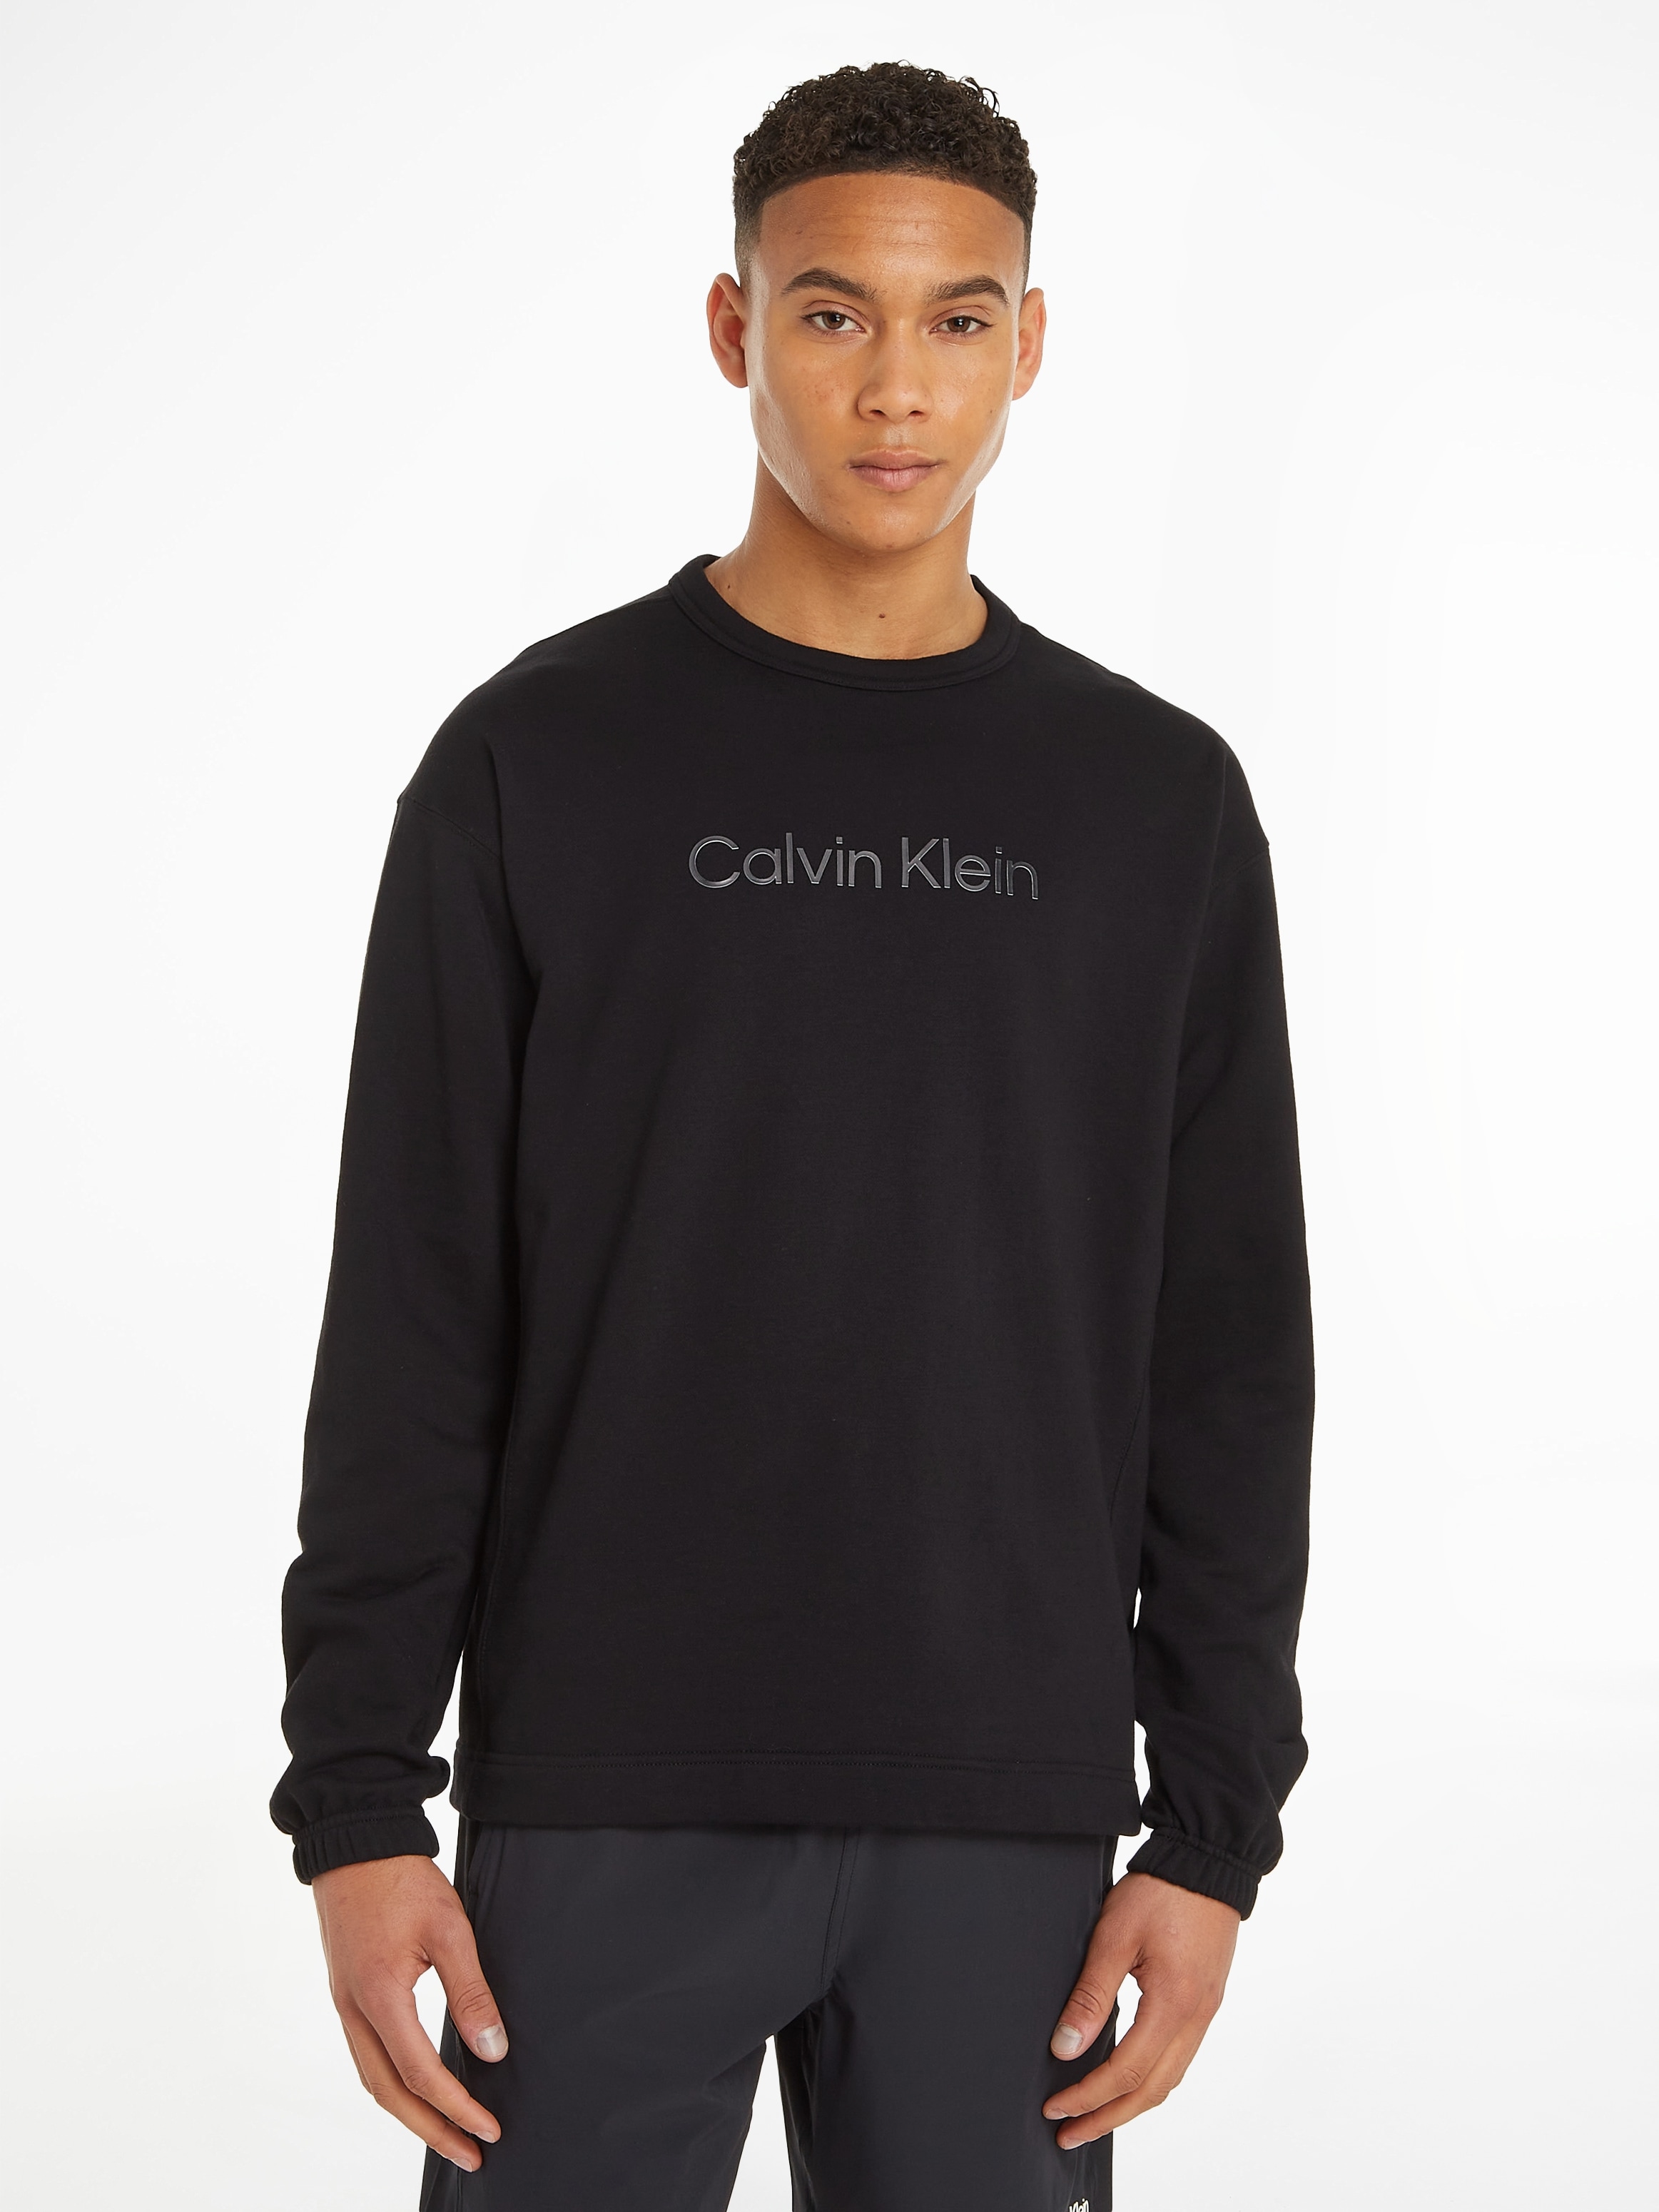 Calvin Klein Sport »Sweatshirt PW« bei online Sweatshirt OTTO shoppen